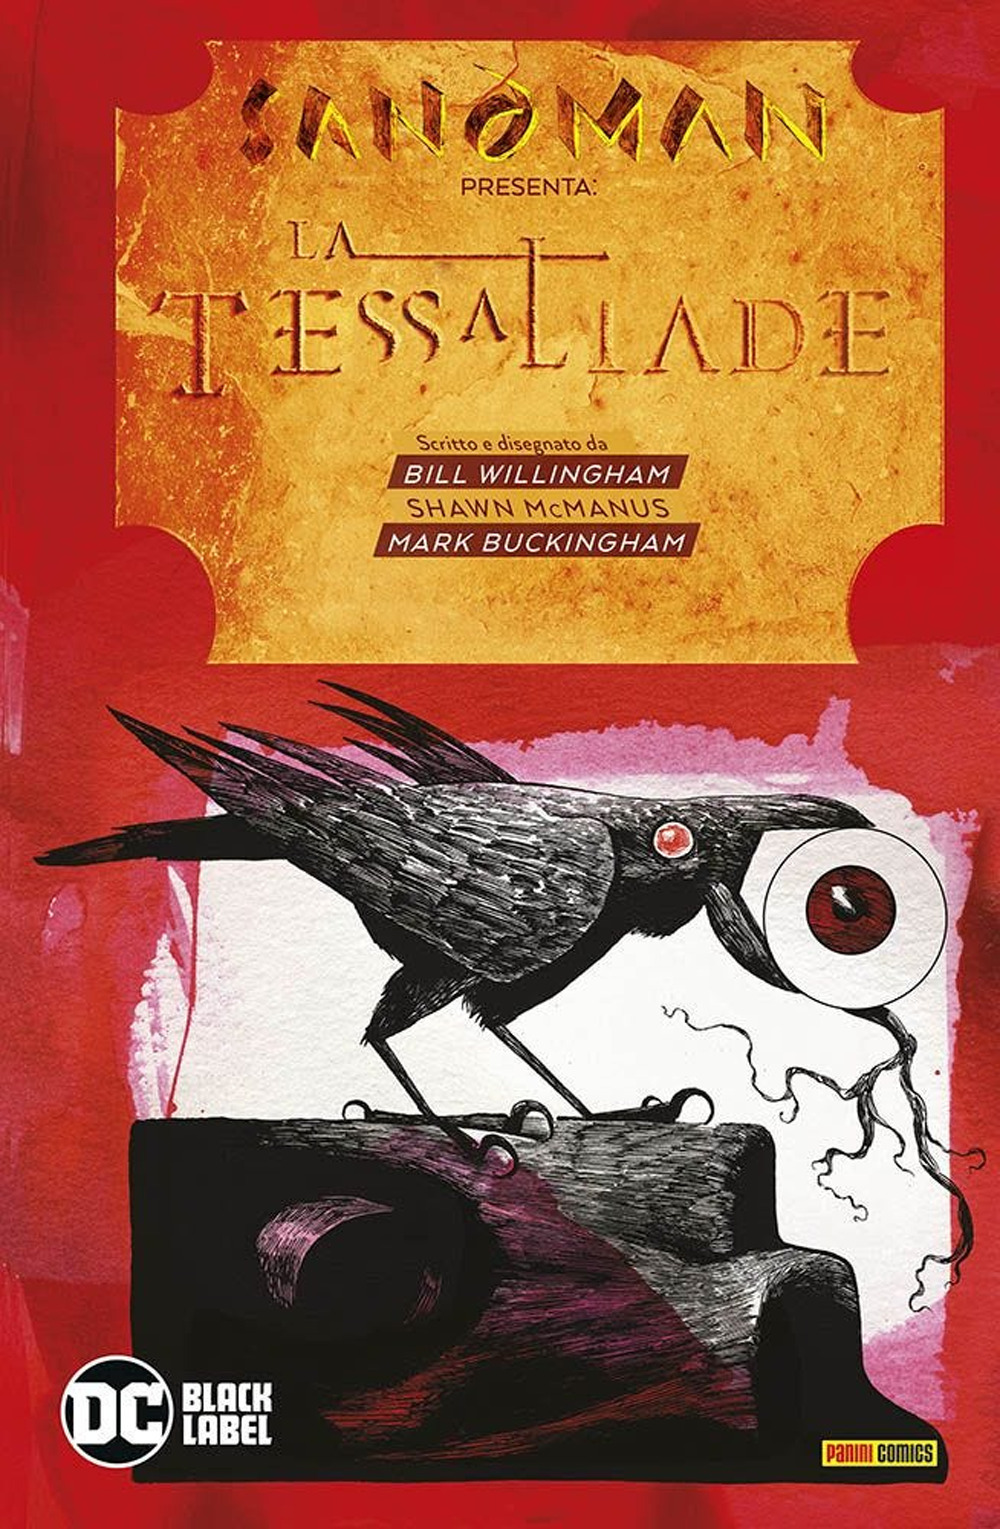 Sandman presenta: La Tessaliade e Merv Testa-di-Zucca. Vol. 3